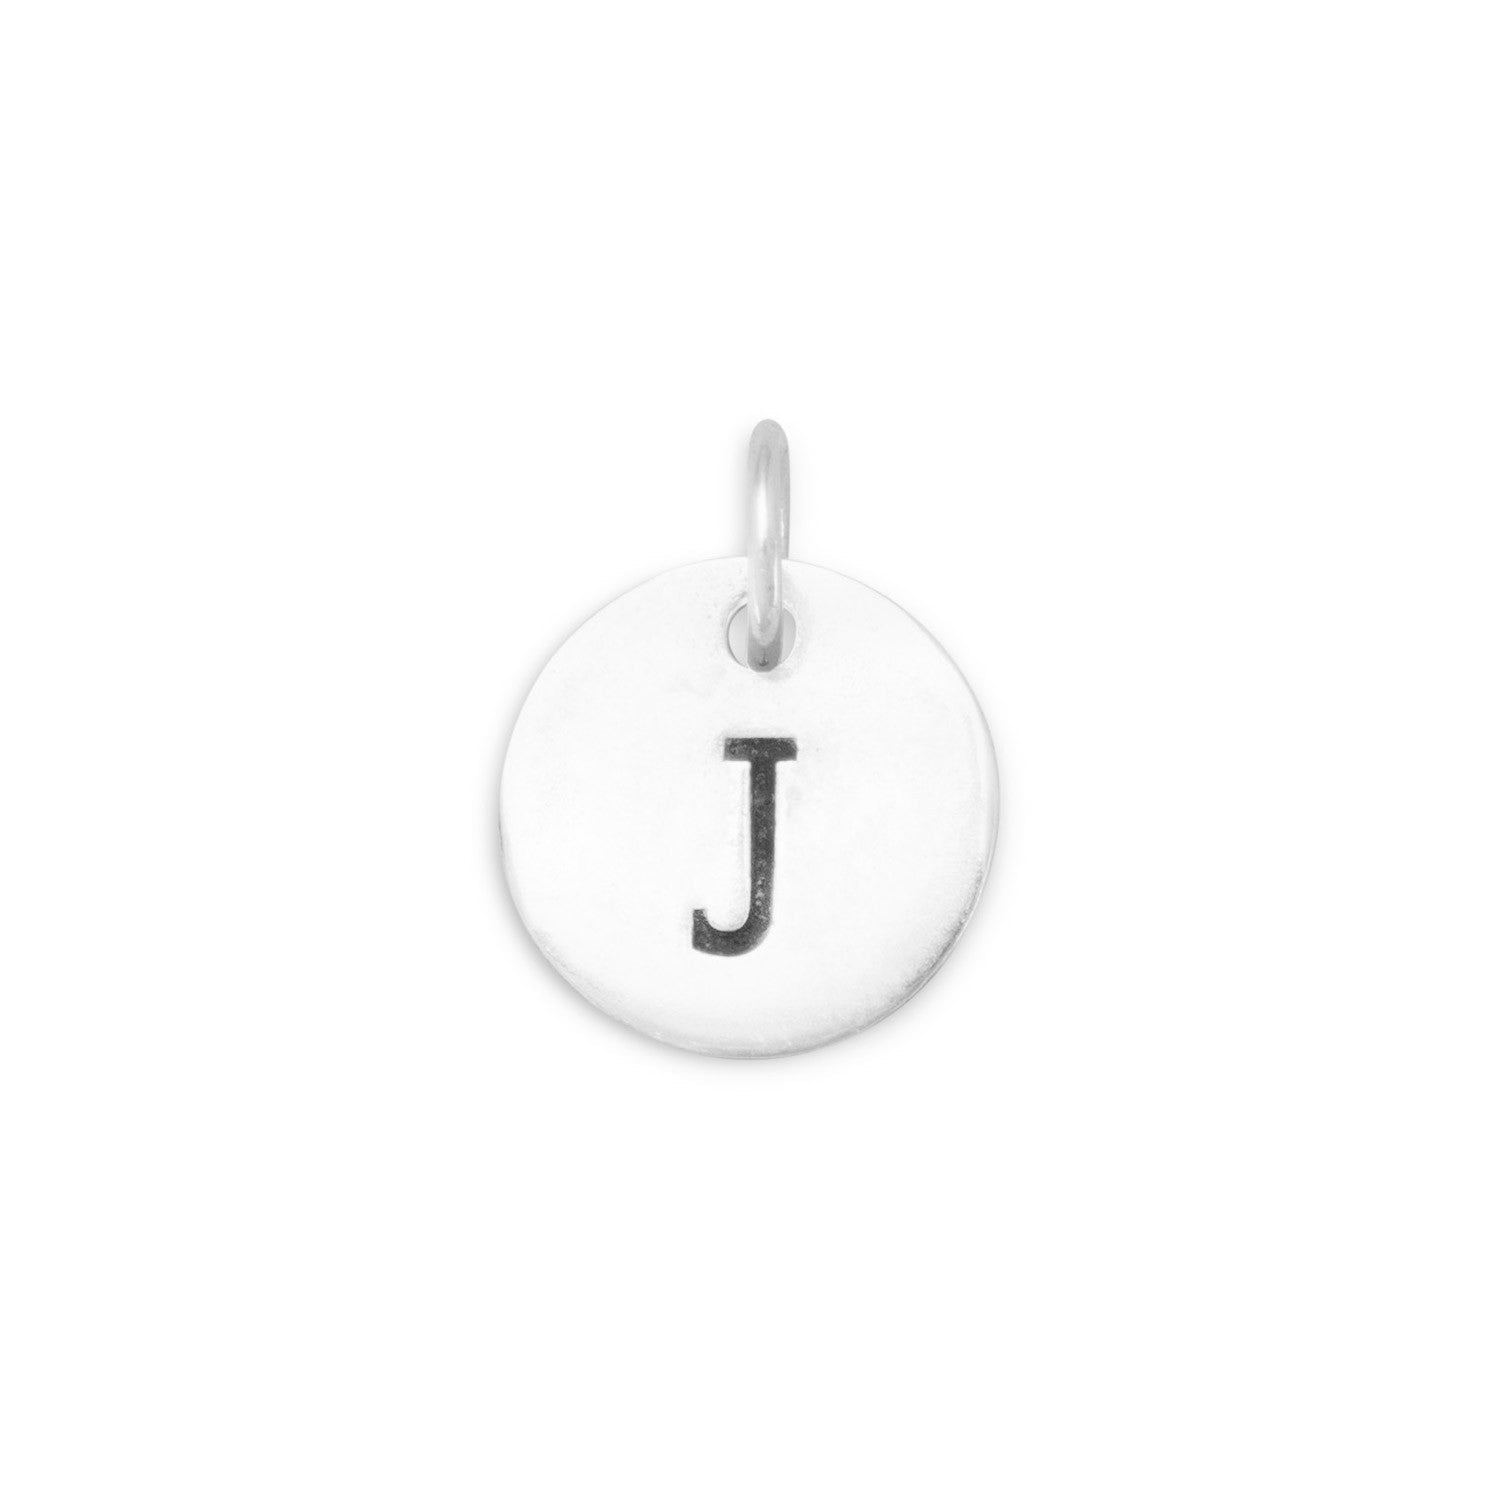 Oxidized Initial "J" Charm